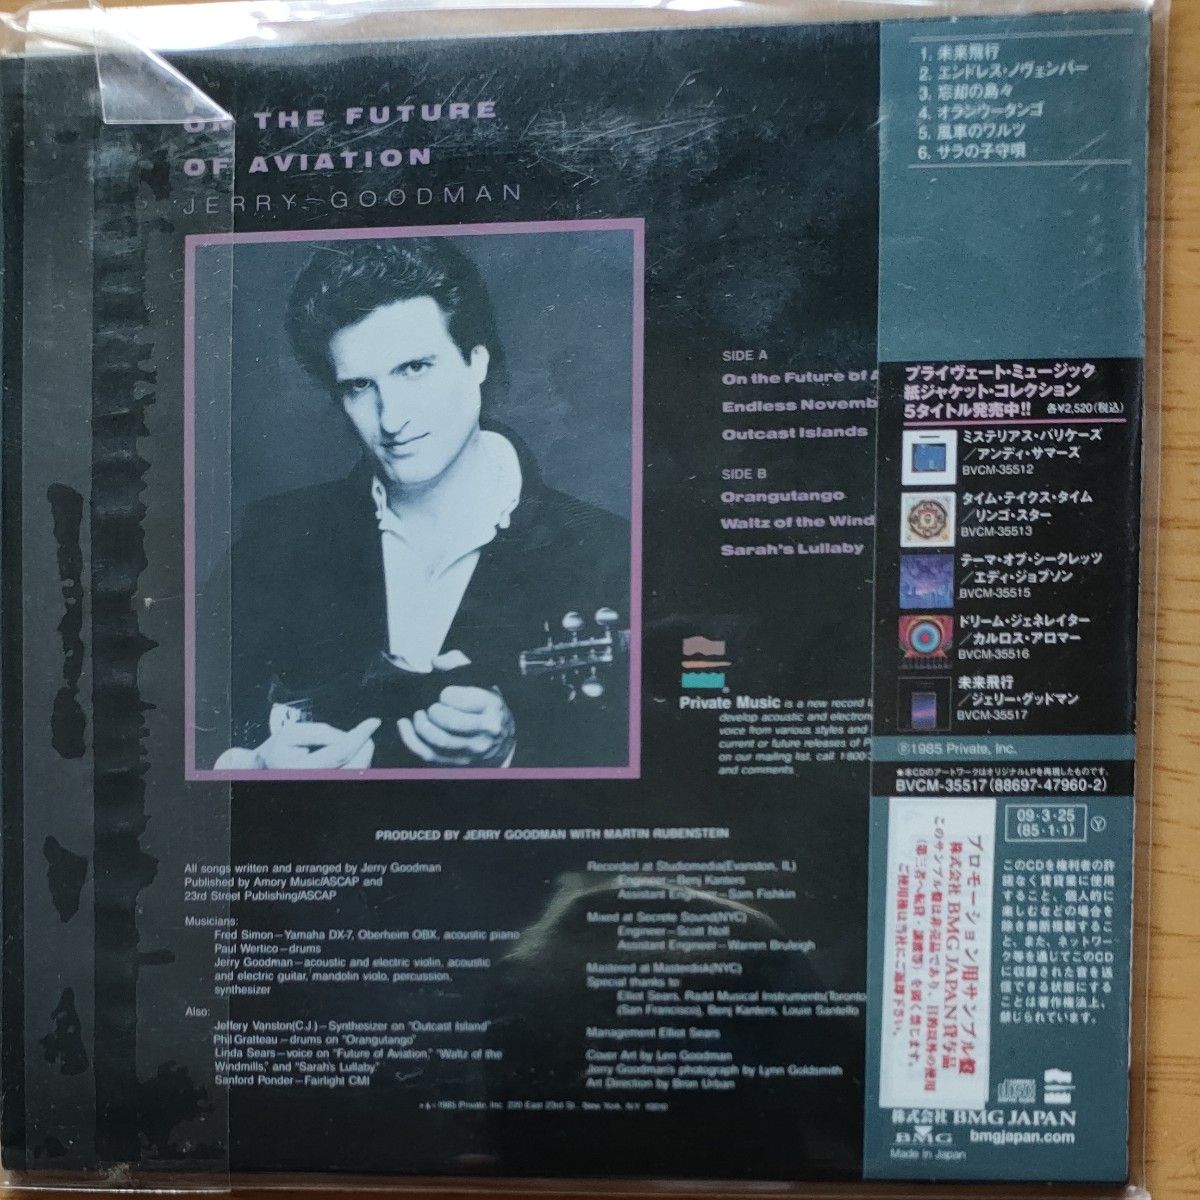 Private Music Record /紙ジャケットコレクション CD5枚セットでの提案の見本盤完全限定盤